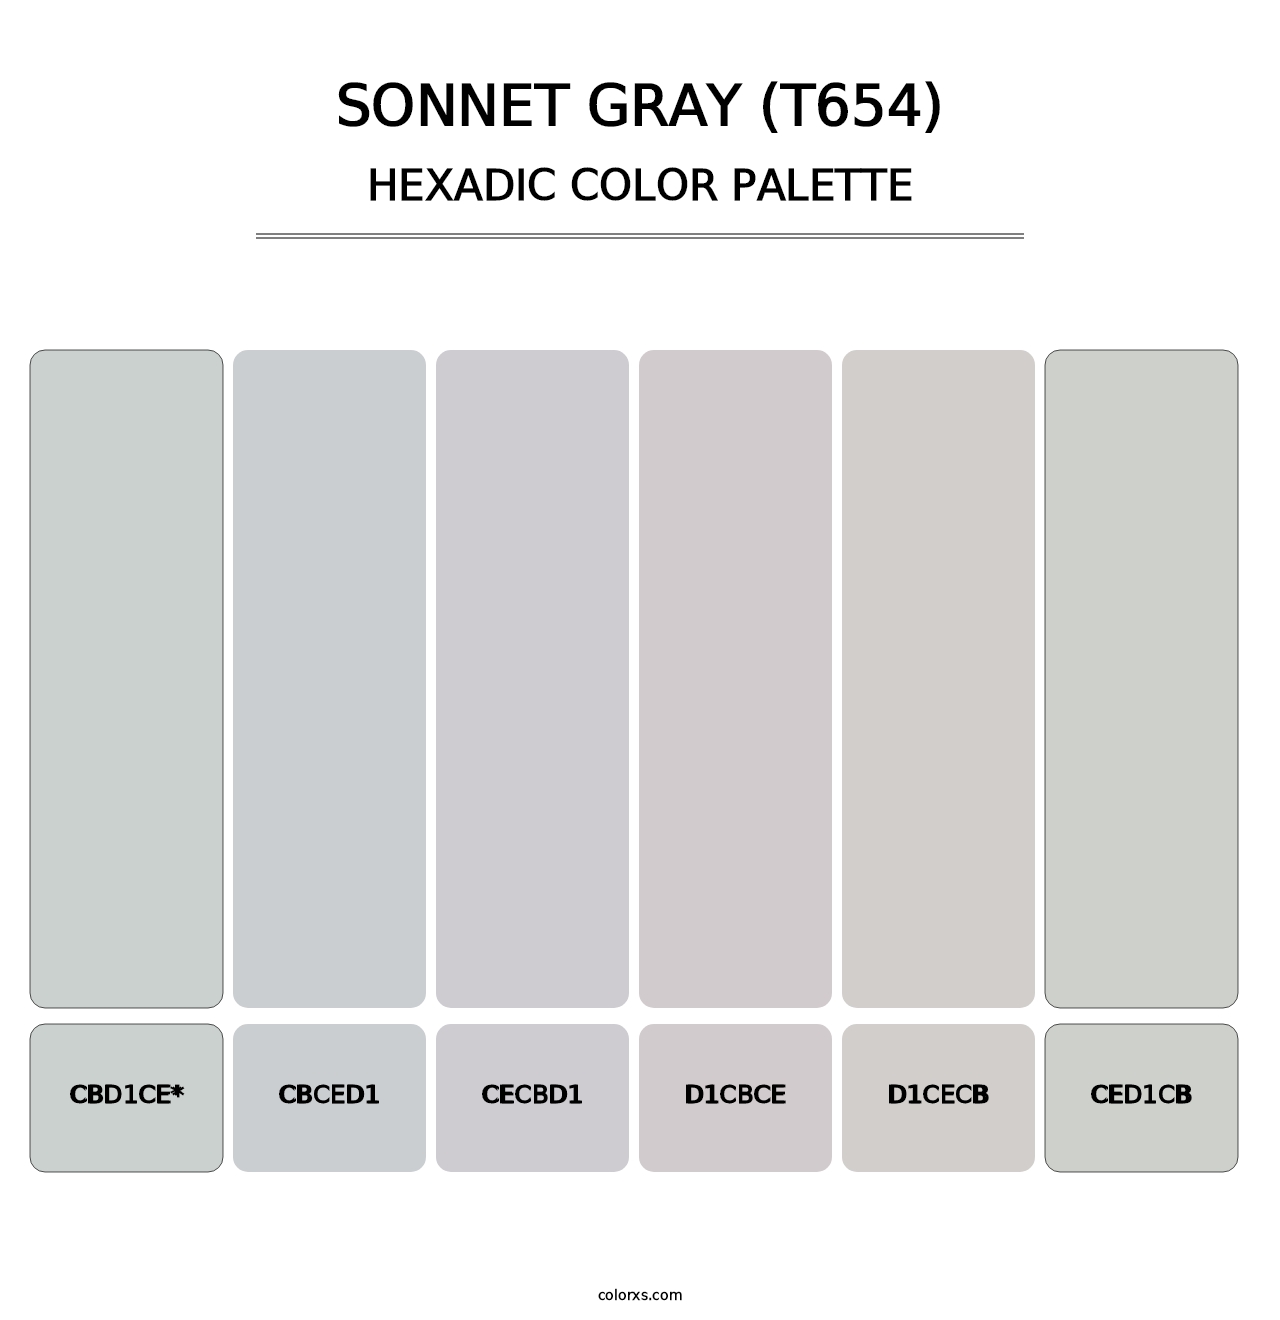 Sonnet Gray (T654) - Hexadic Color Palette